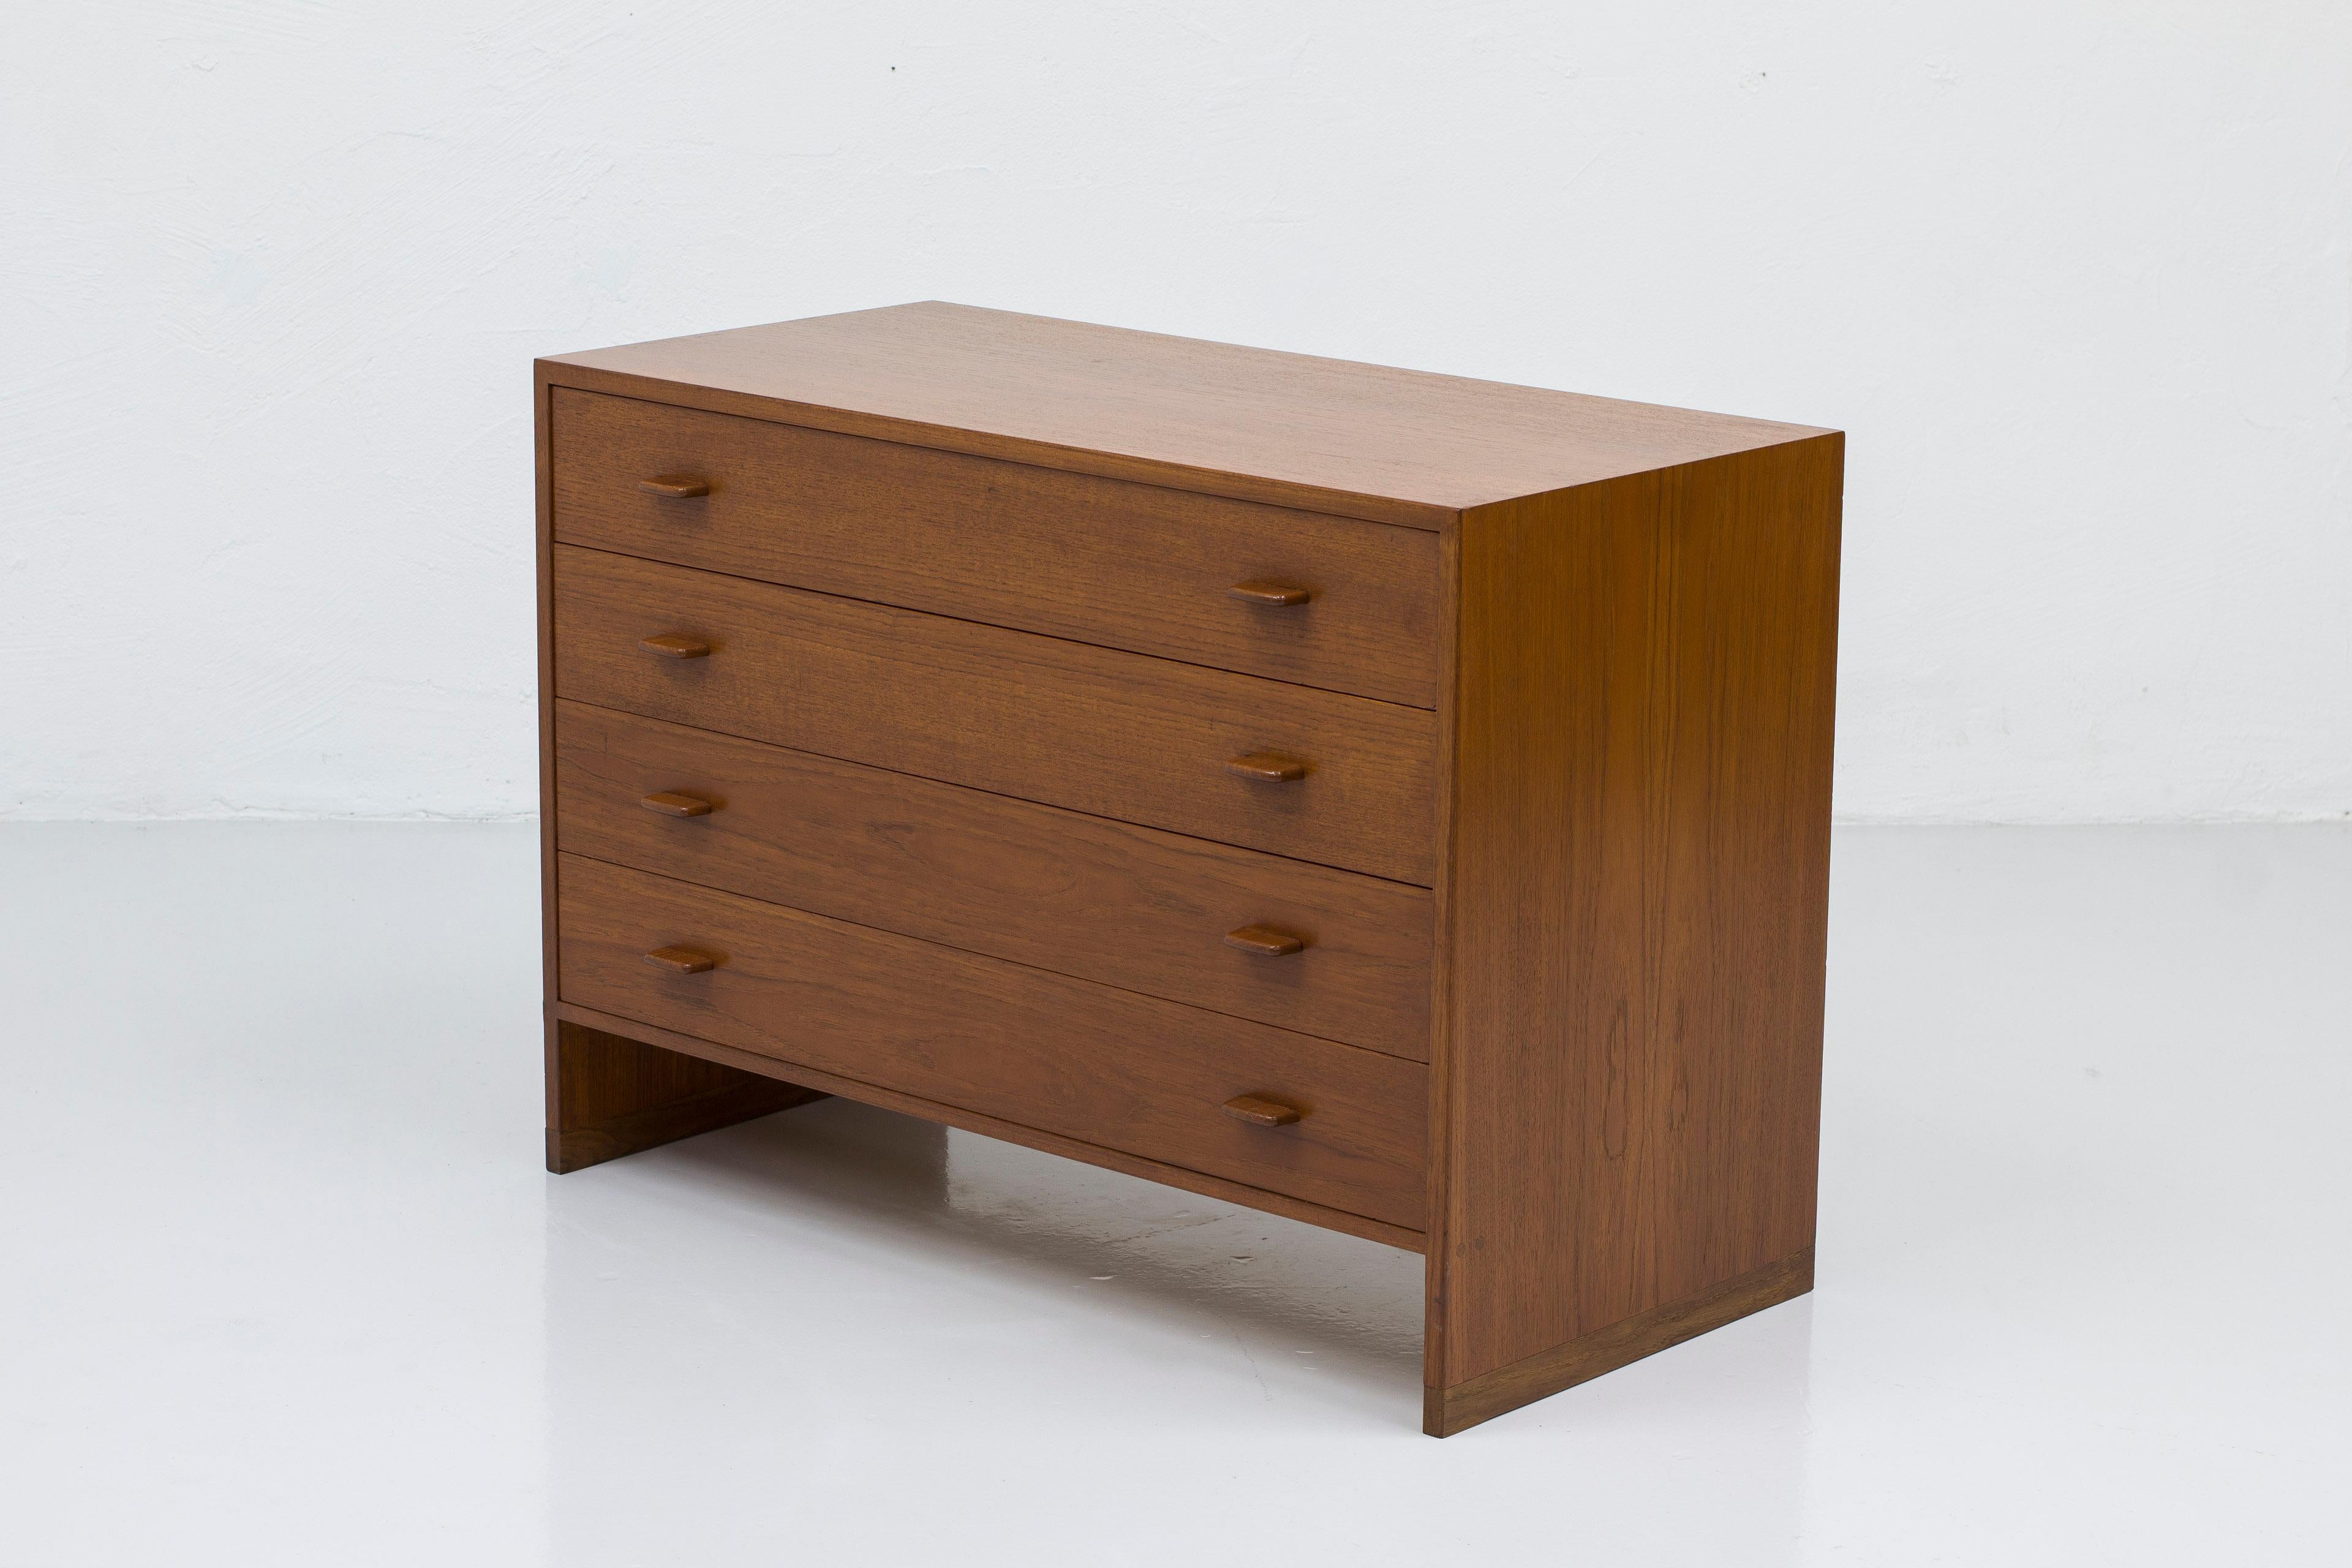 Scandinavian Modern Teak and oak chest of drawers RY16 by Hans J. Wegner, Denmark 1960s For Sale